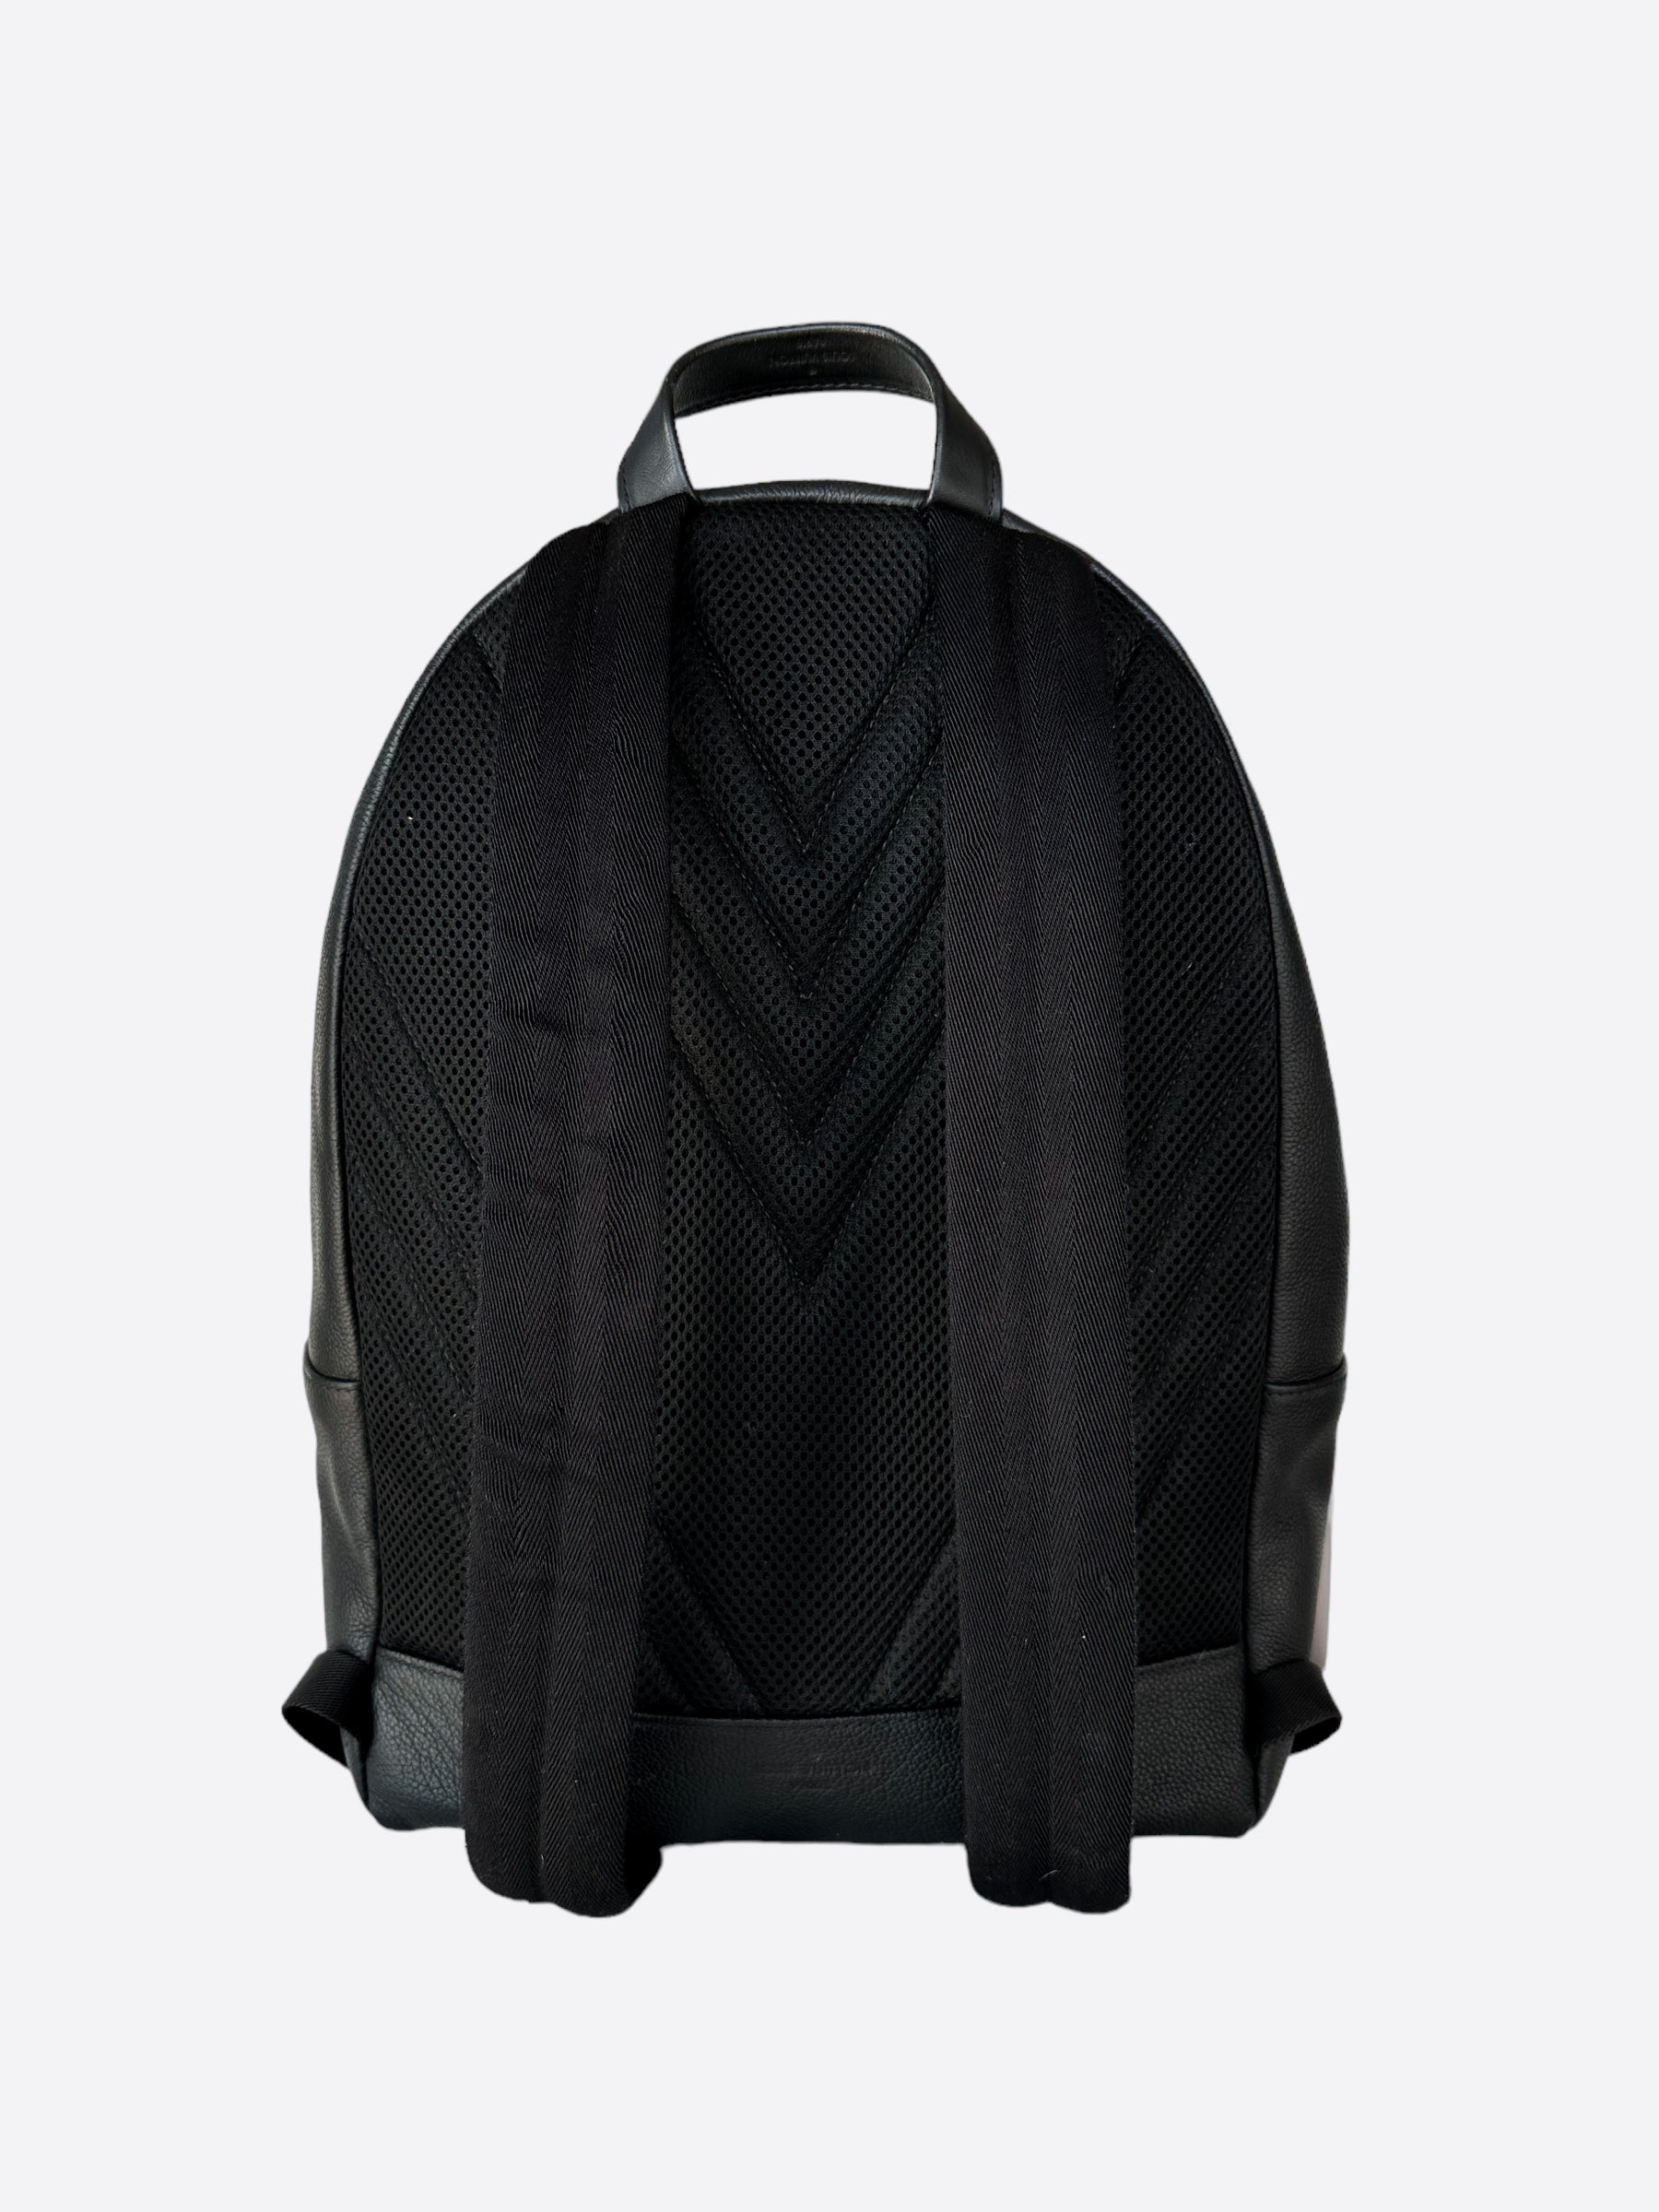 Takeoff Backpack - Luxury LV Aerogram Black